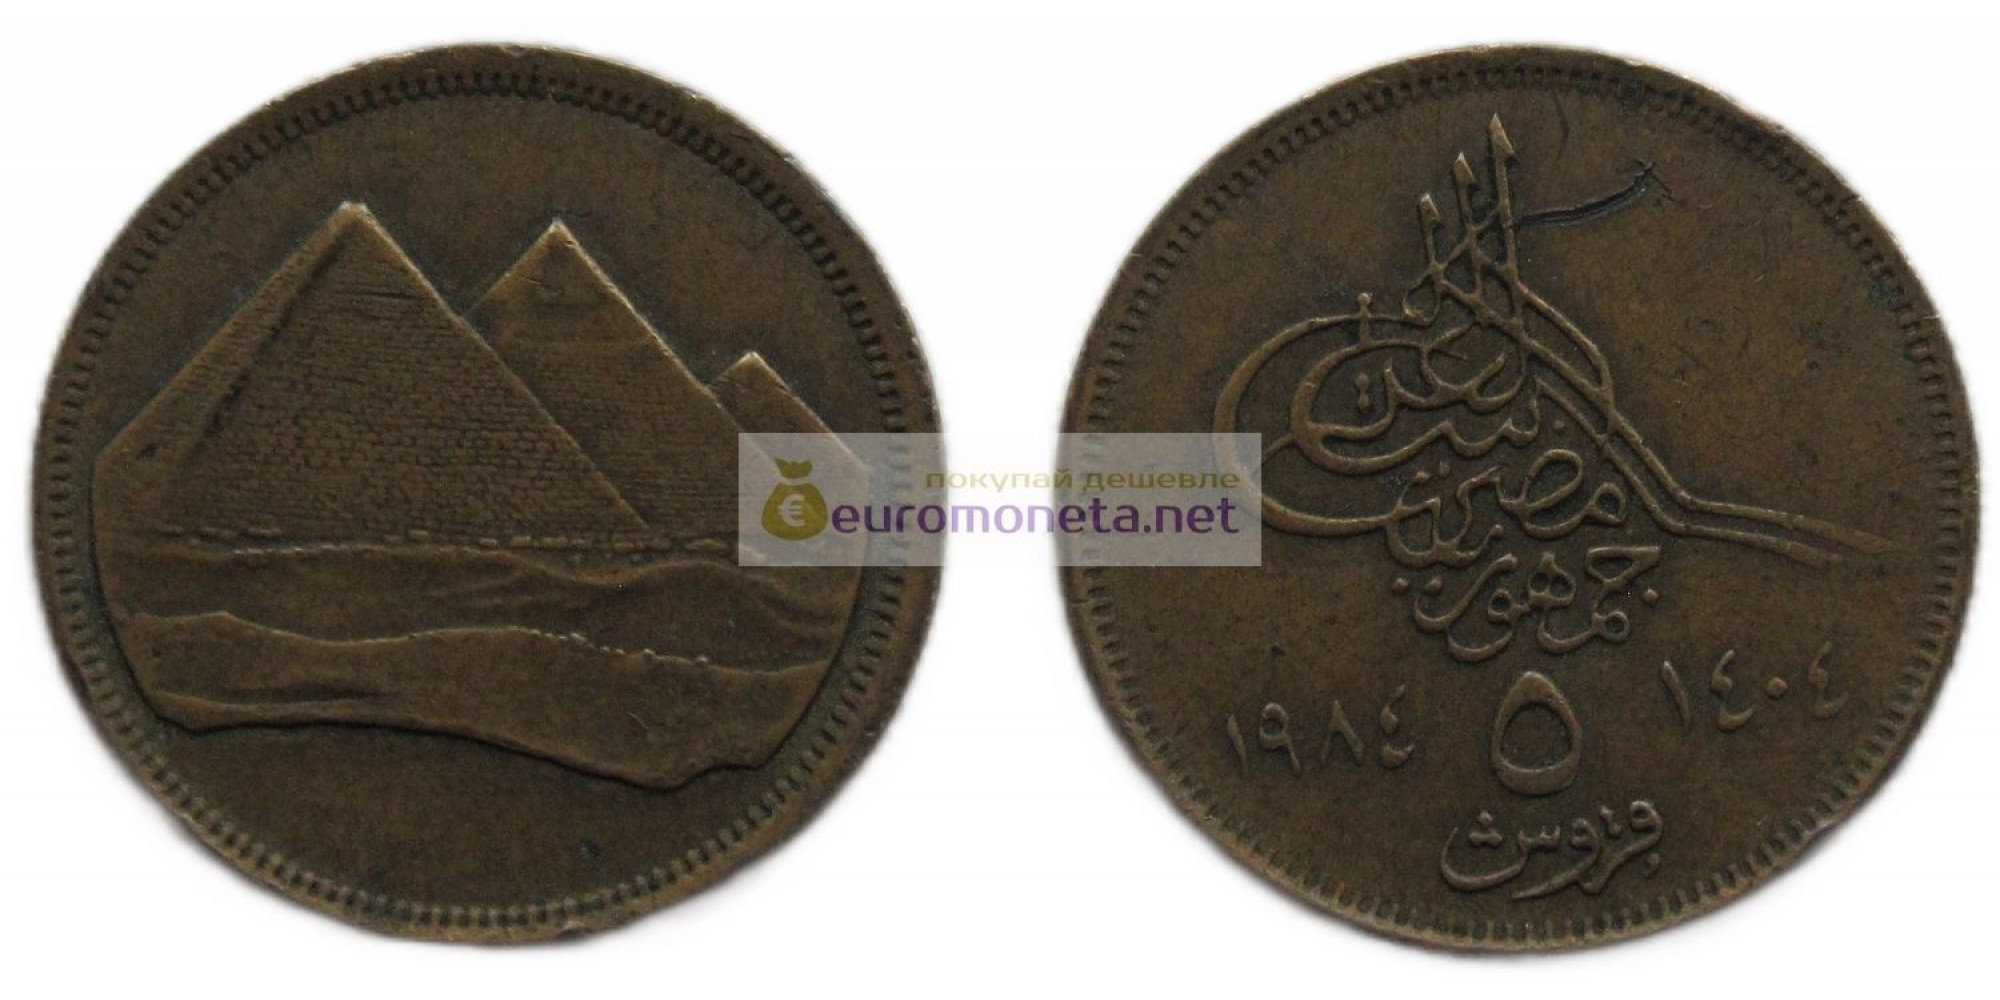 Арабская Республика Египет 5 пиастров 1984 год. Маленькая цифра номинала (٥) снизу монеты. Христианская дата (١٩٨٤) слева от номинала